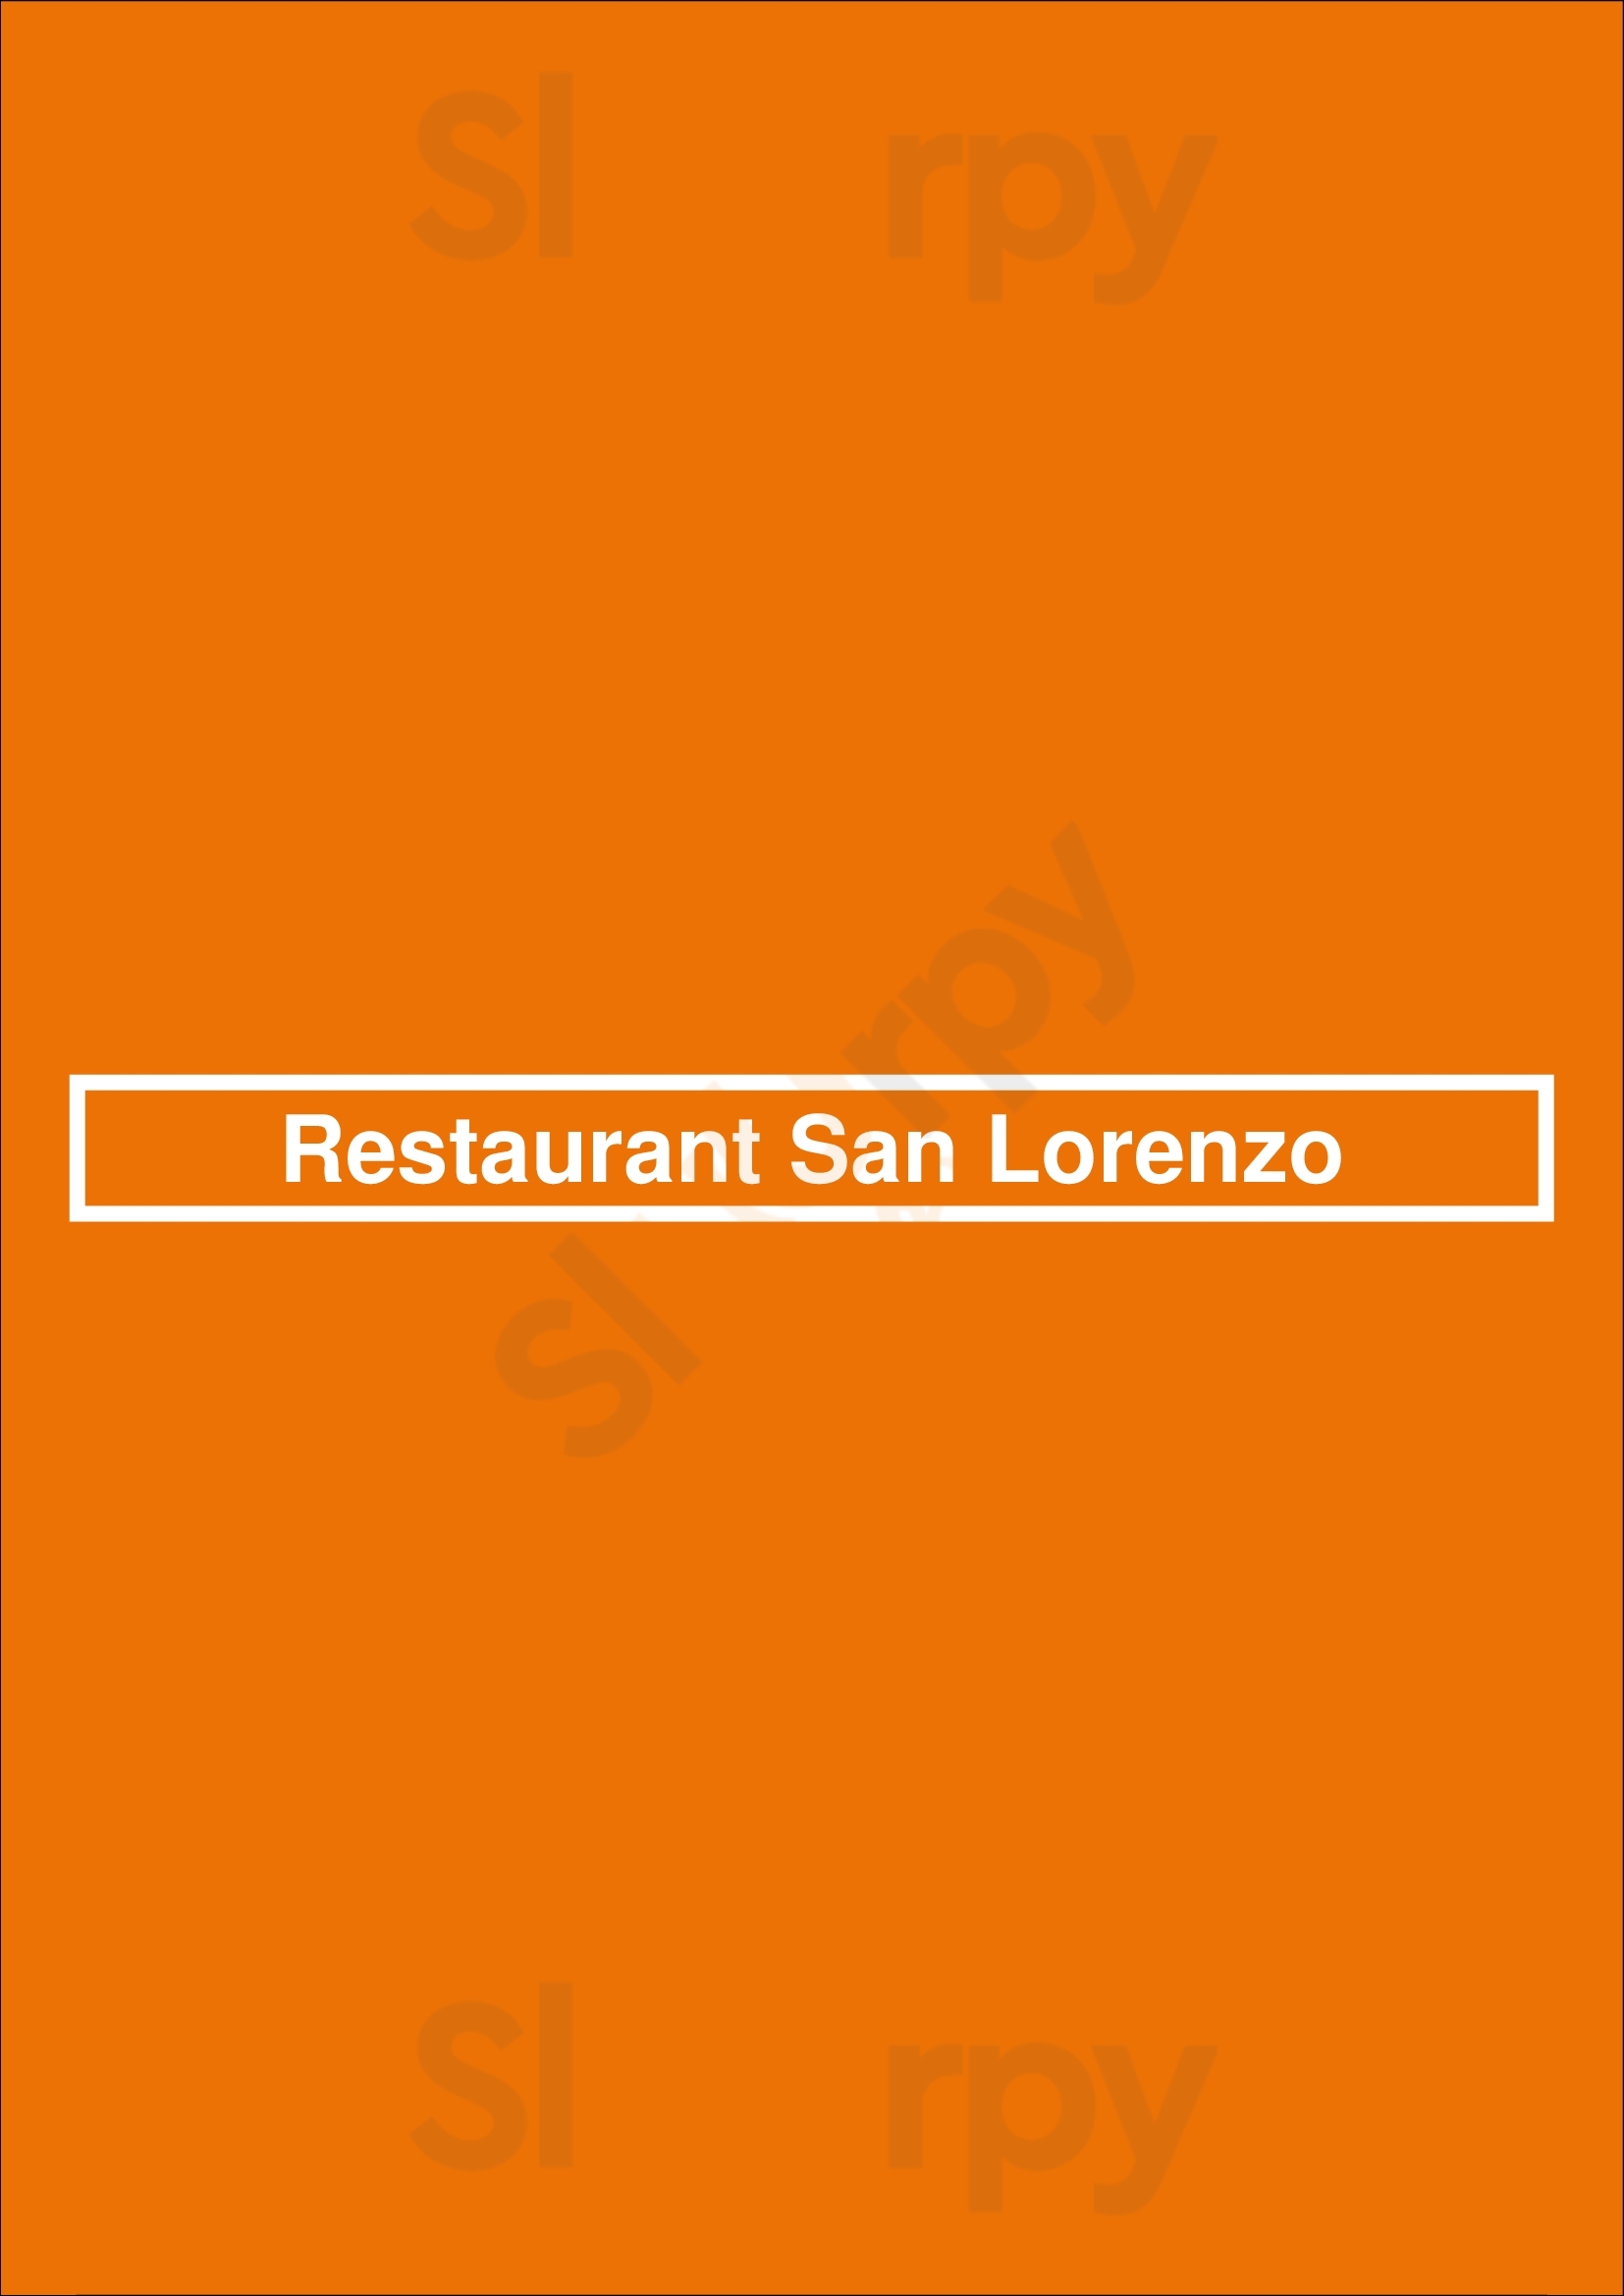 Restaurant San Lorenzo Haarlem Menu - 1